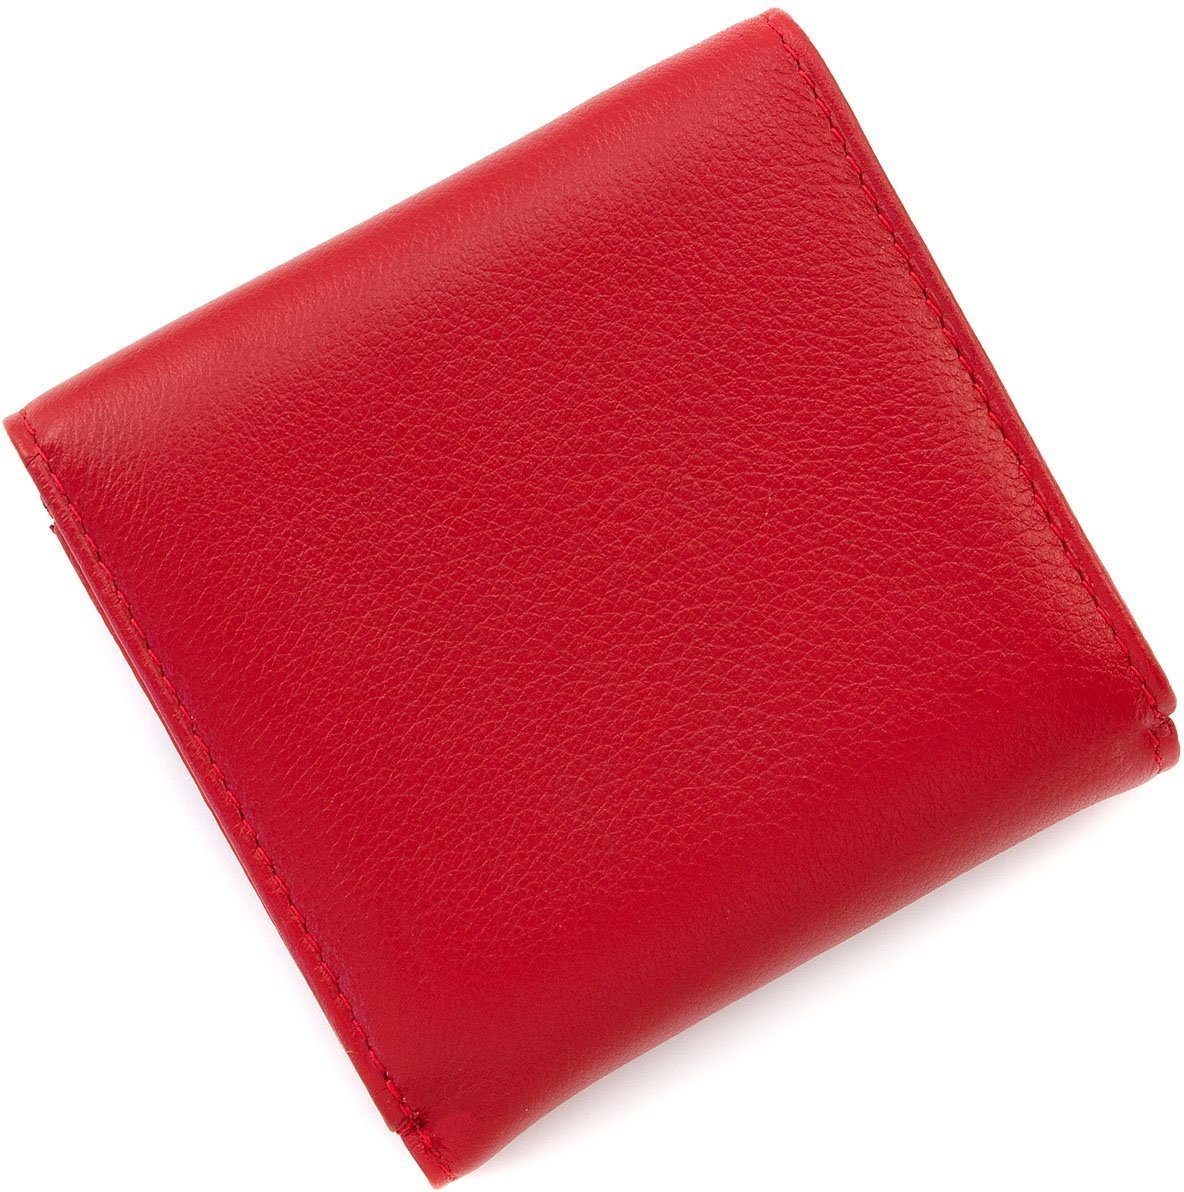 Миниатюрный женский кожаный кошелечек красного цвета Marco Coverna (17506)